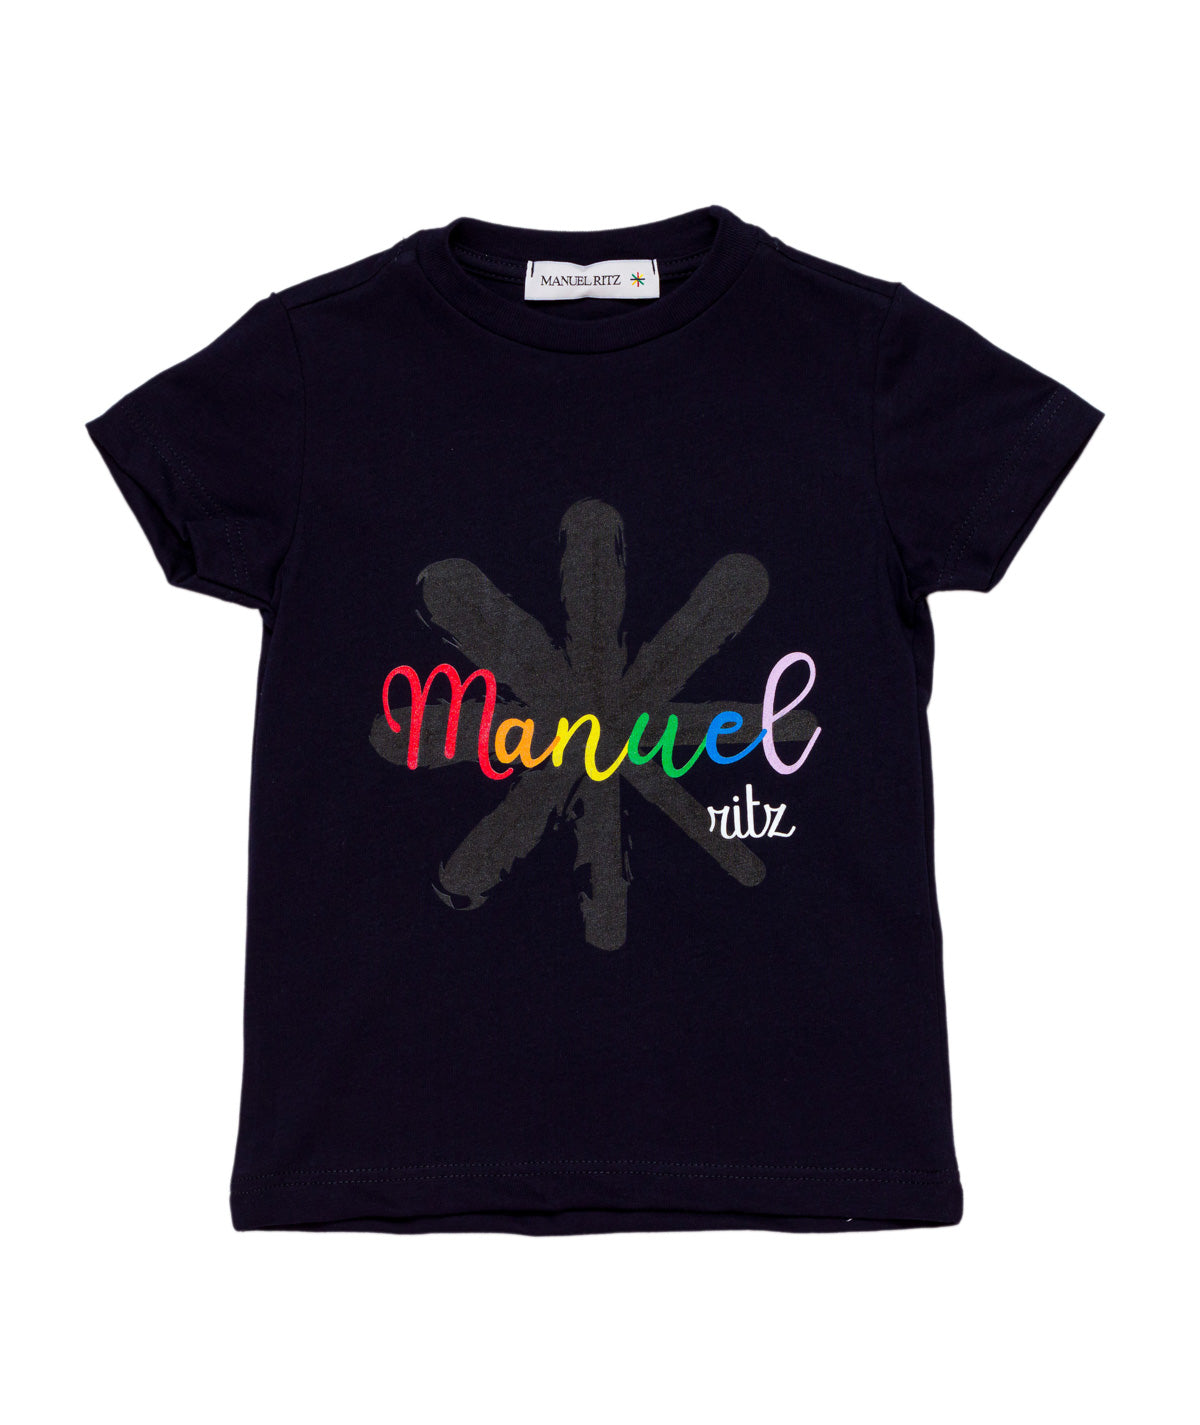 Manuel Ritz t-shirt